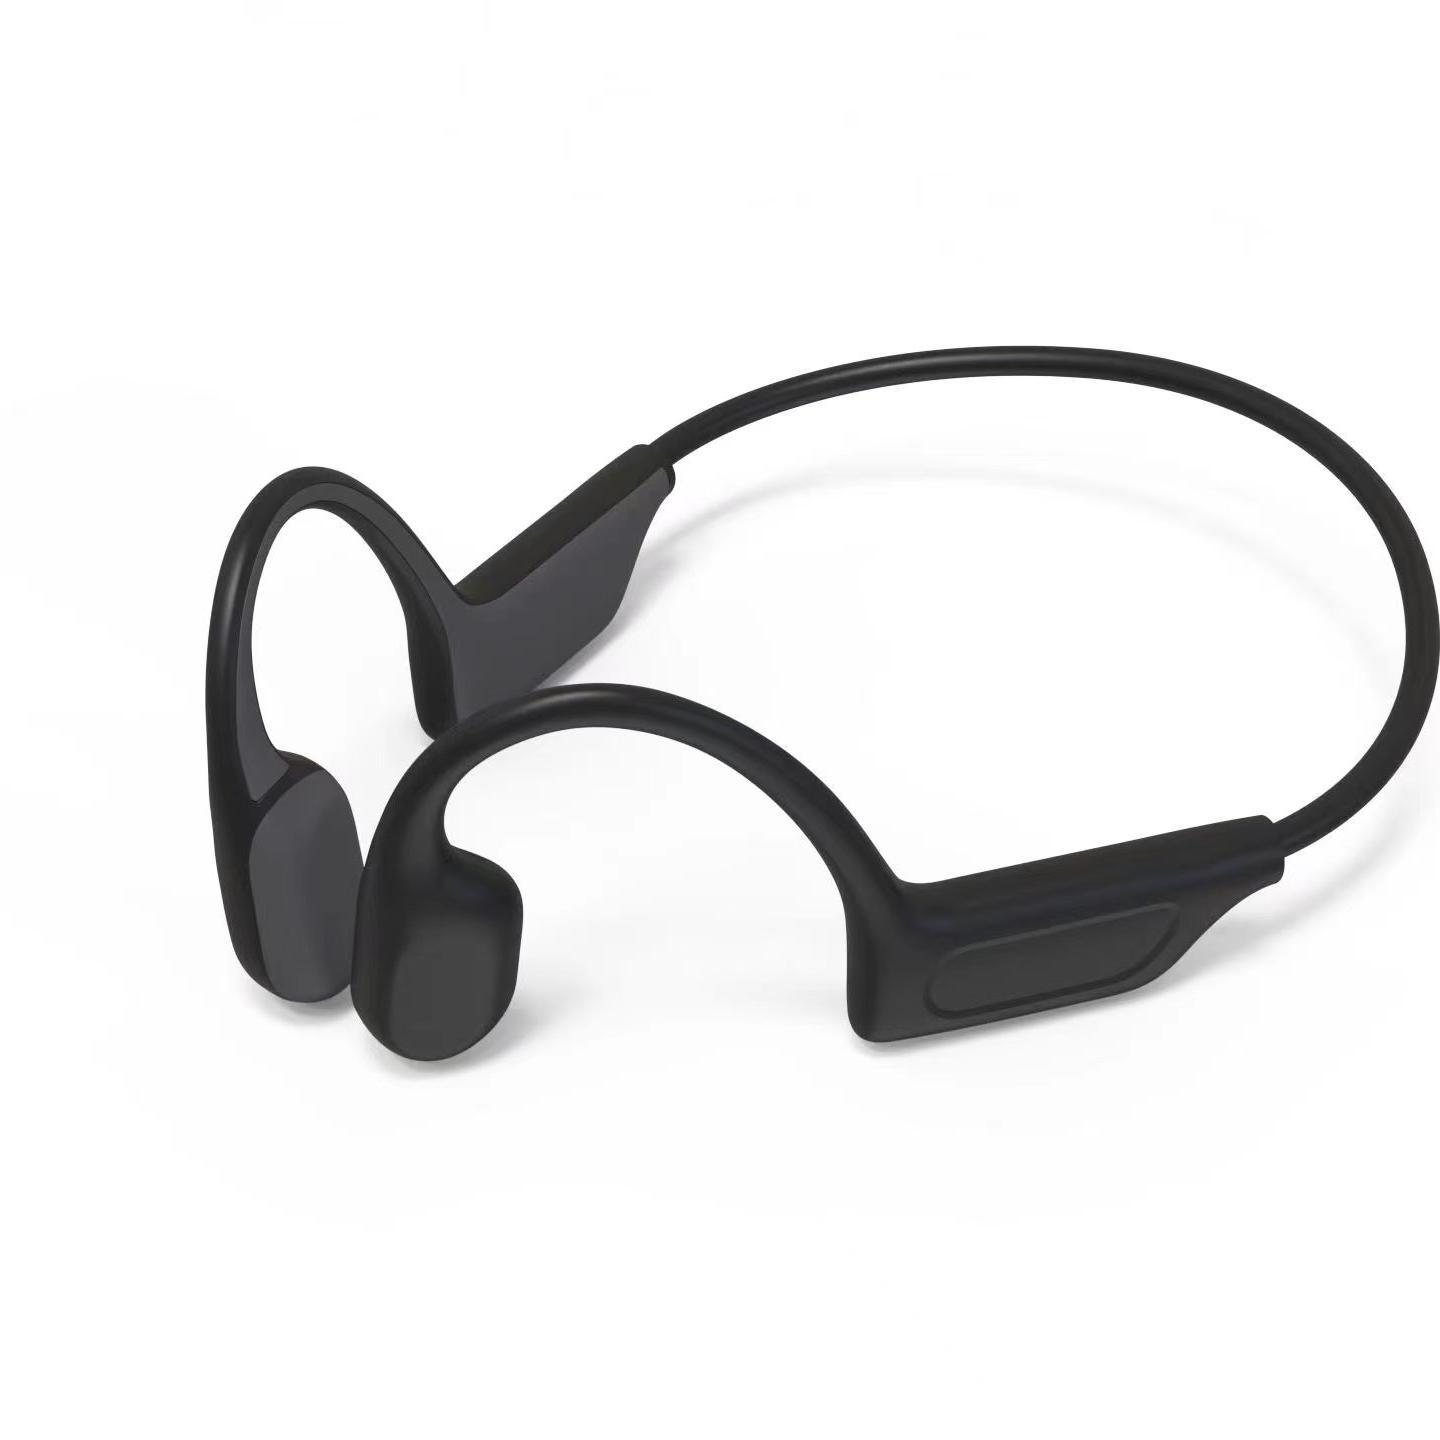 Kabelloses Knochenleitungs-Headset F06 mit guter Klangqualität